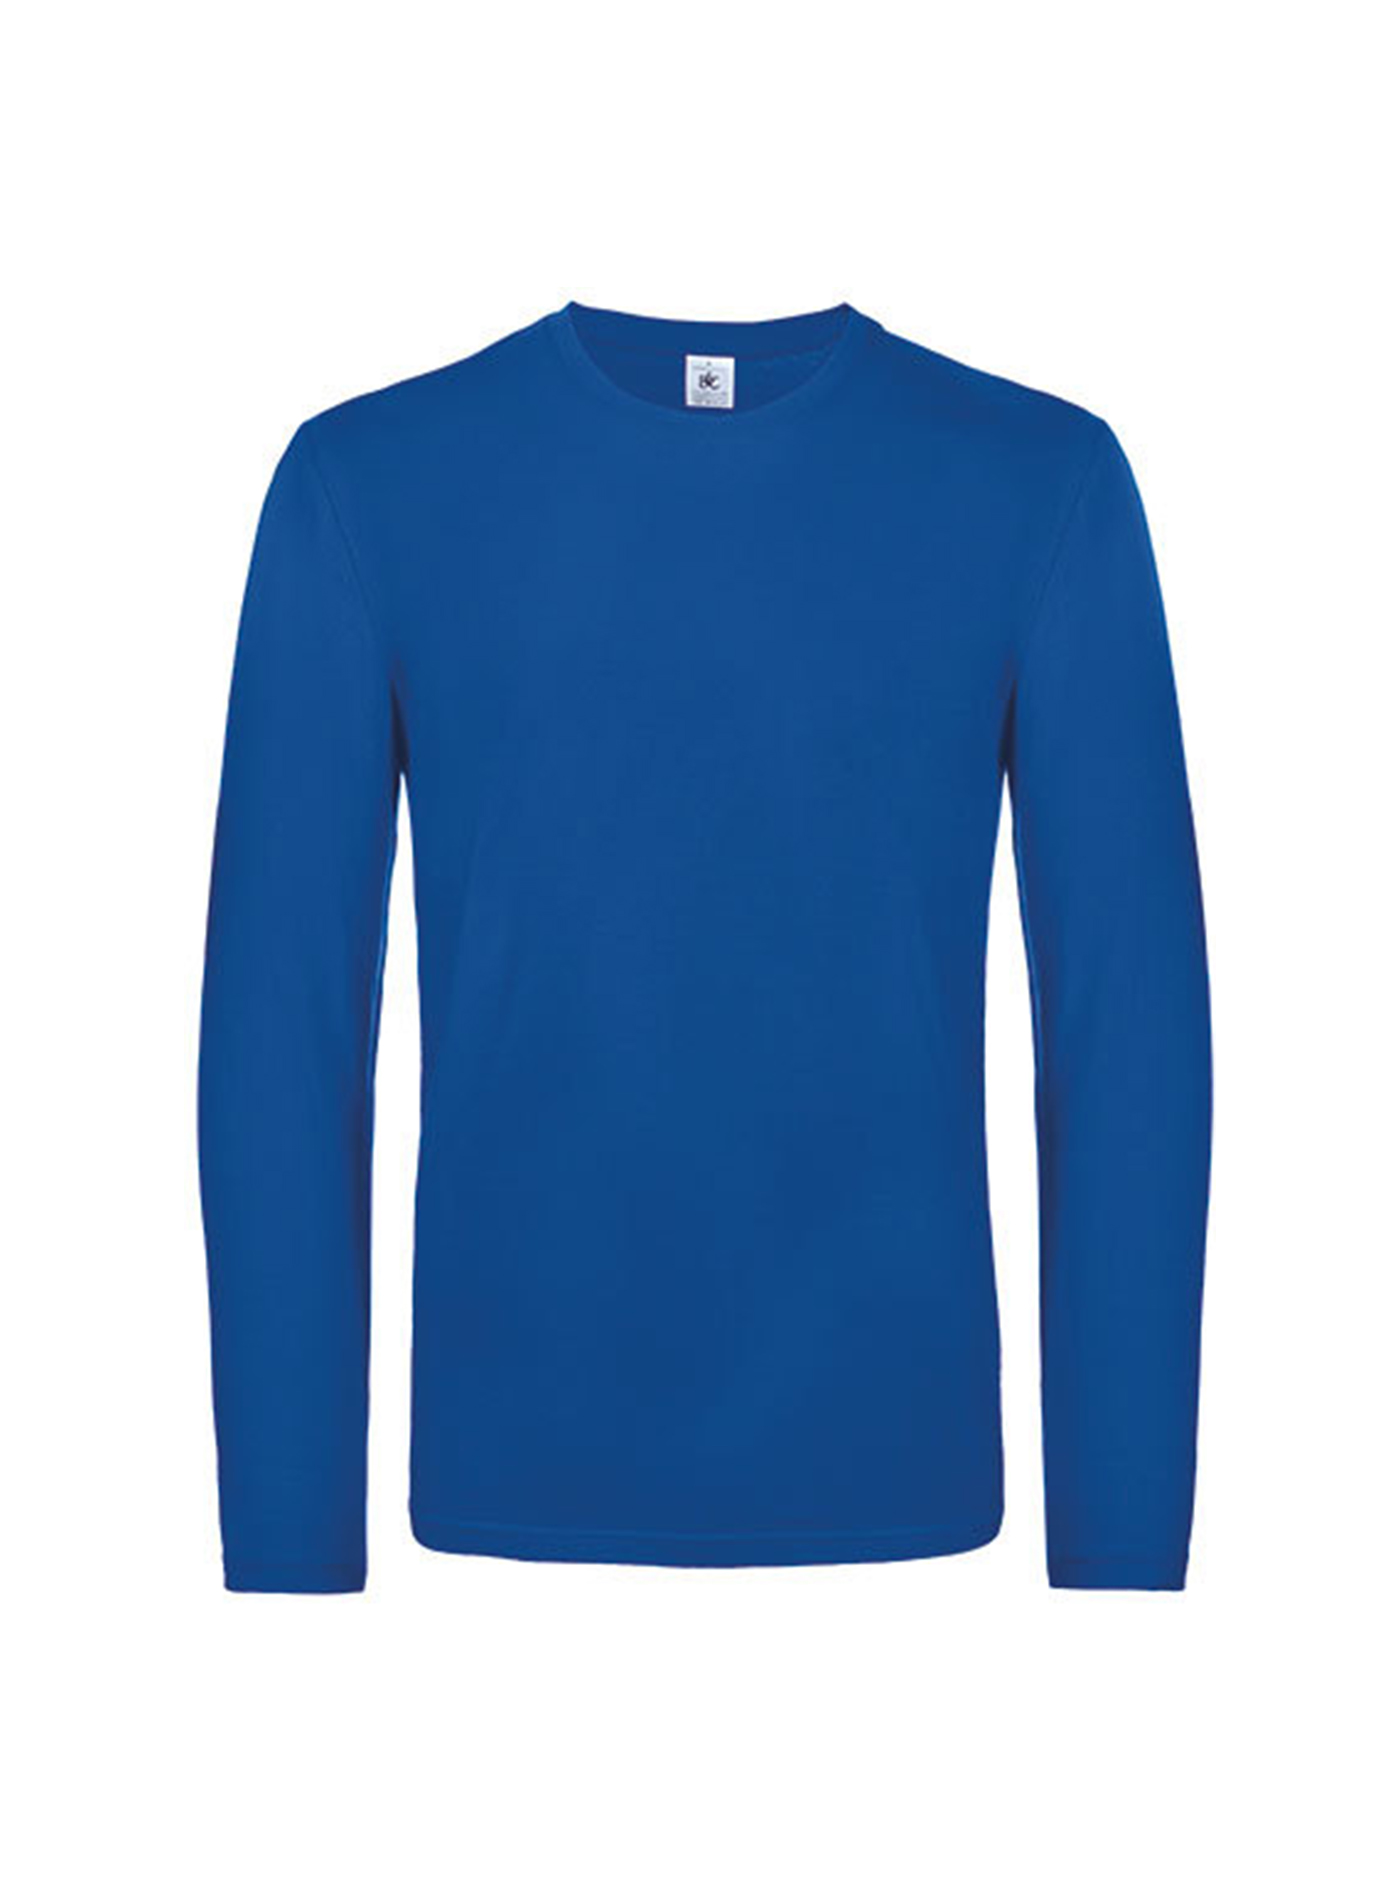 Pánské tričko s dlouhým rukávem B&C Collection - Královská modrá S